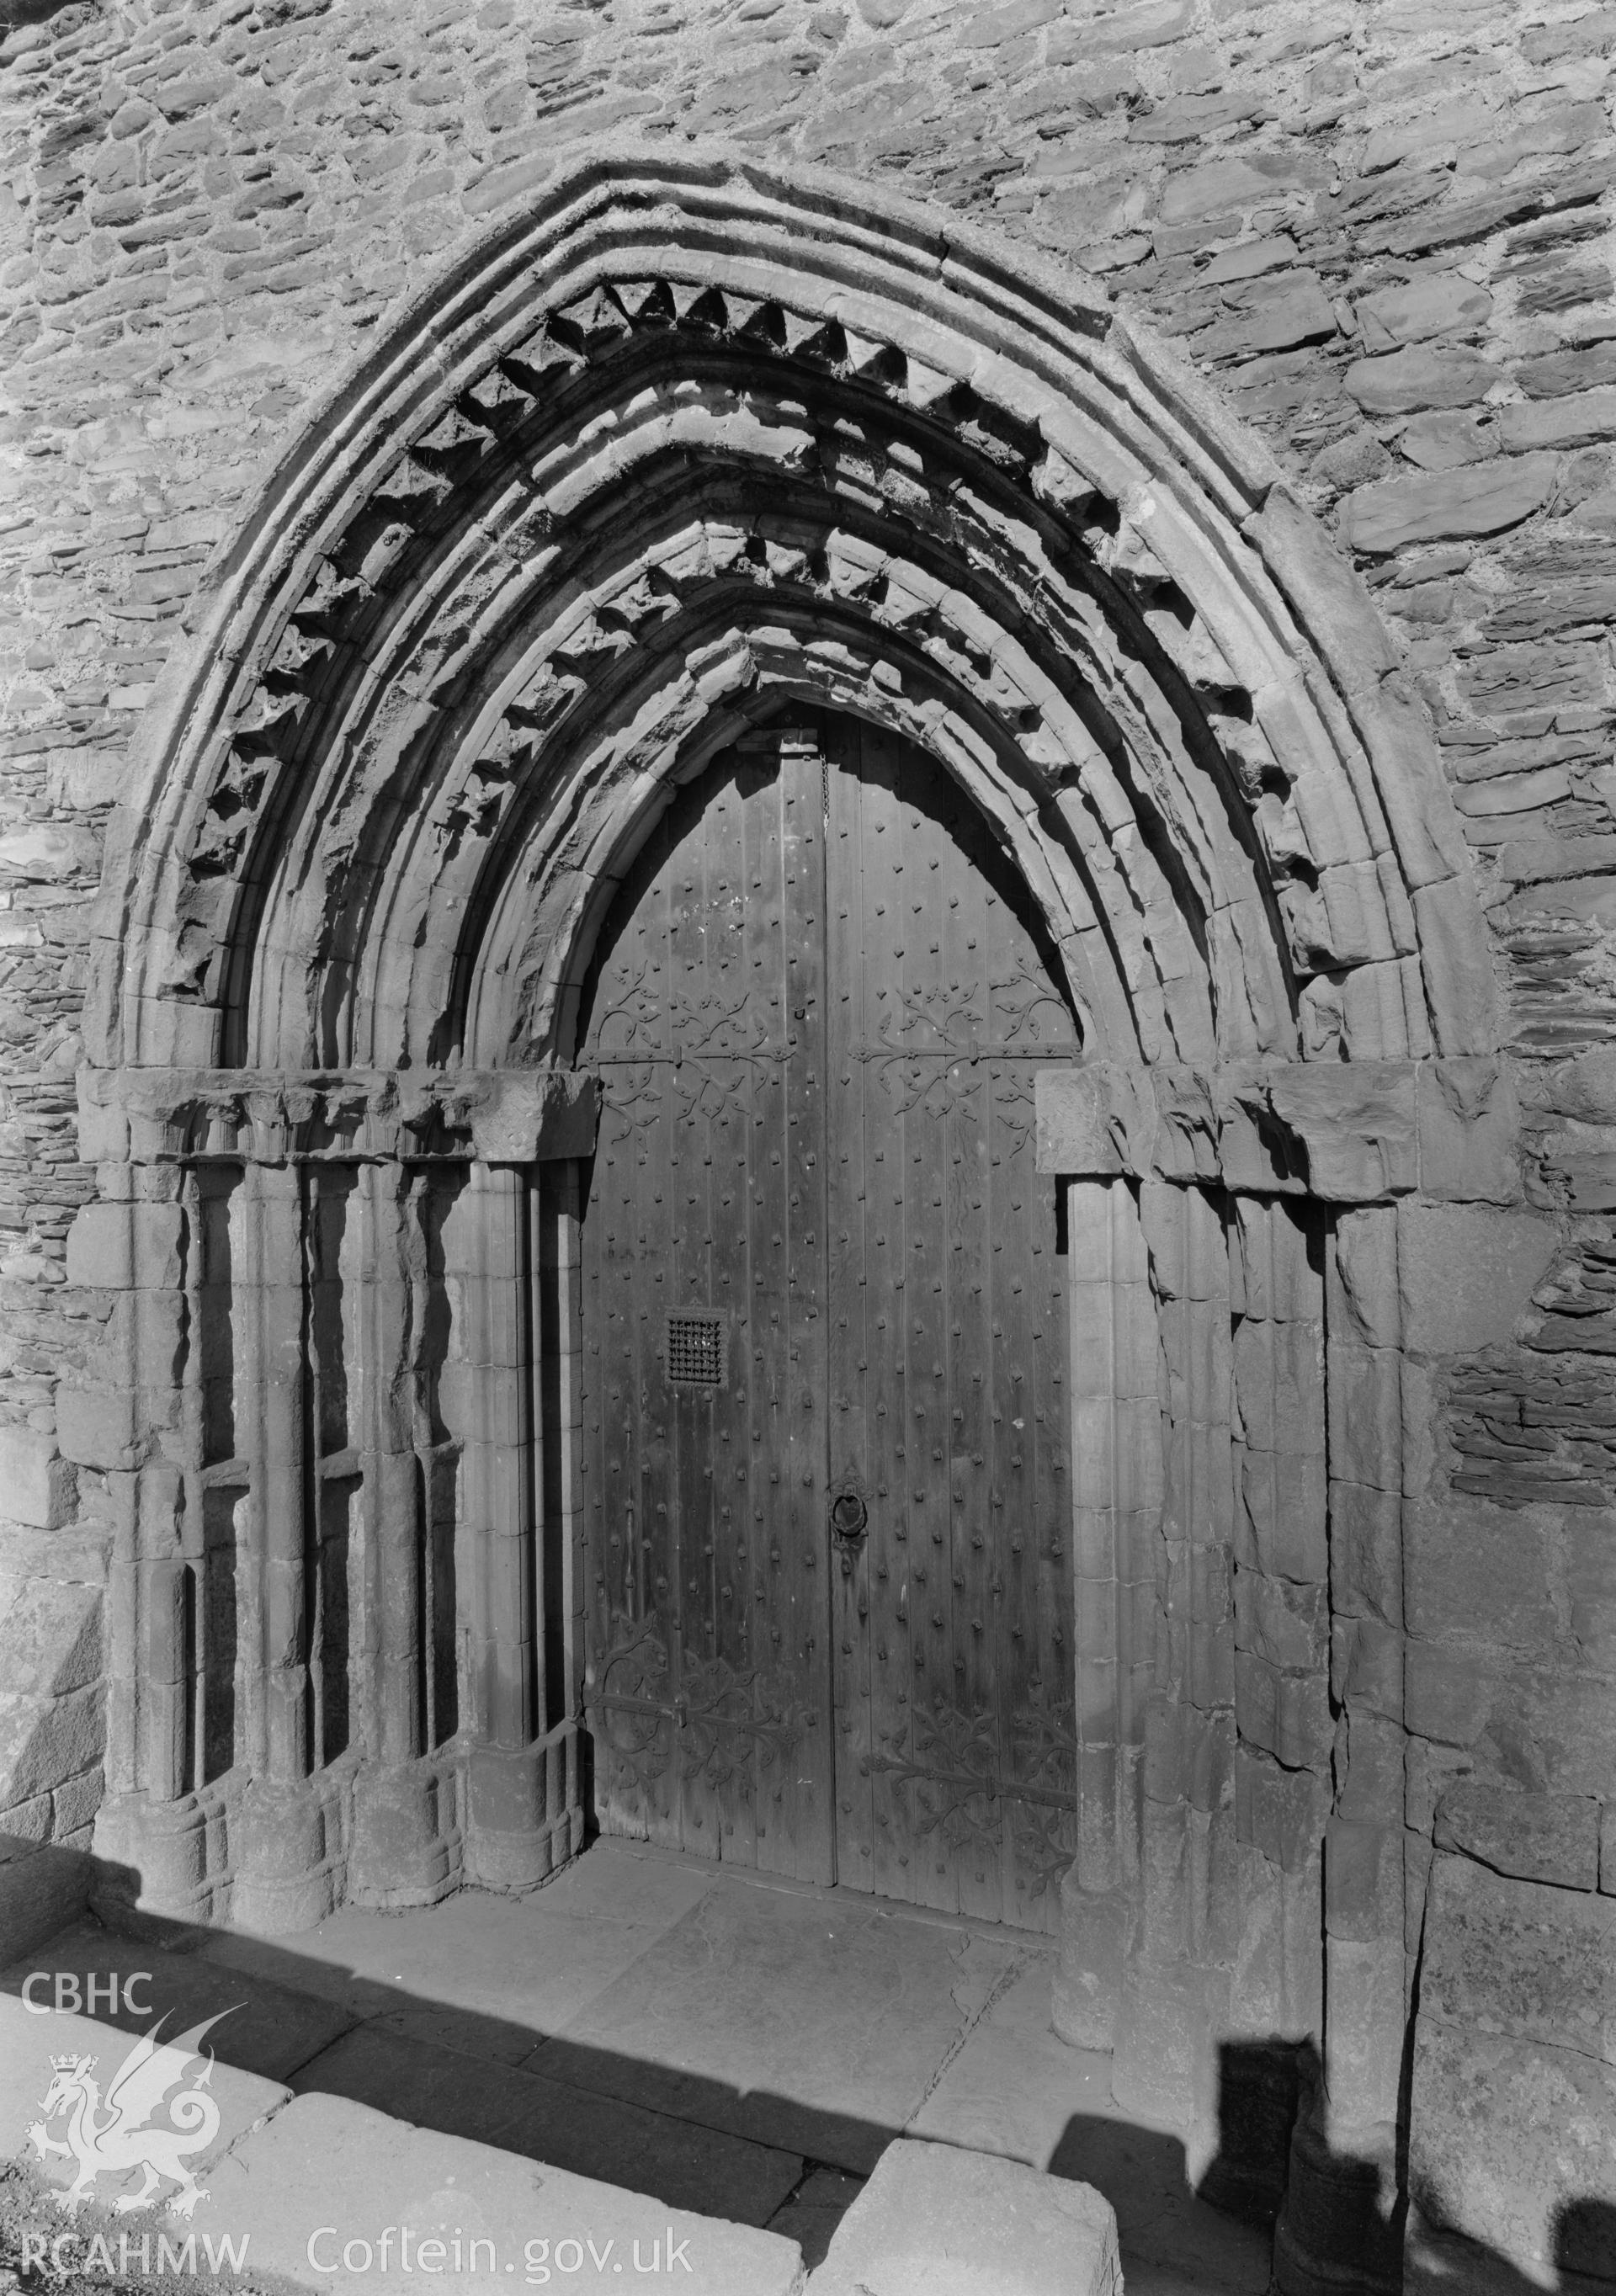 D.O.E photograph of Valle Crucis Abbey.